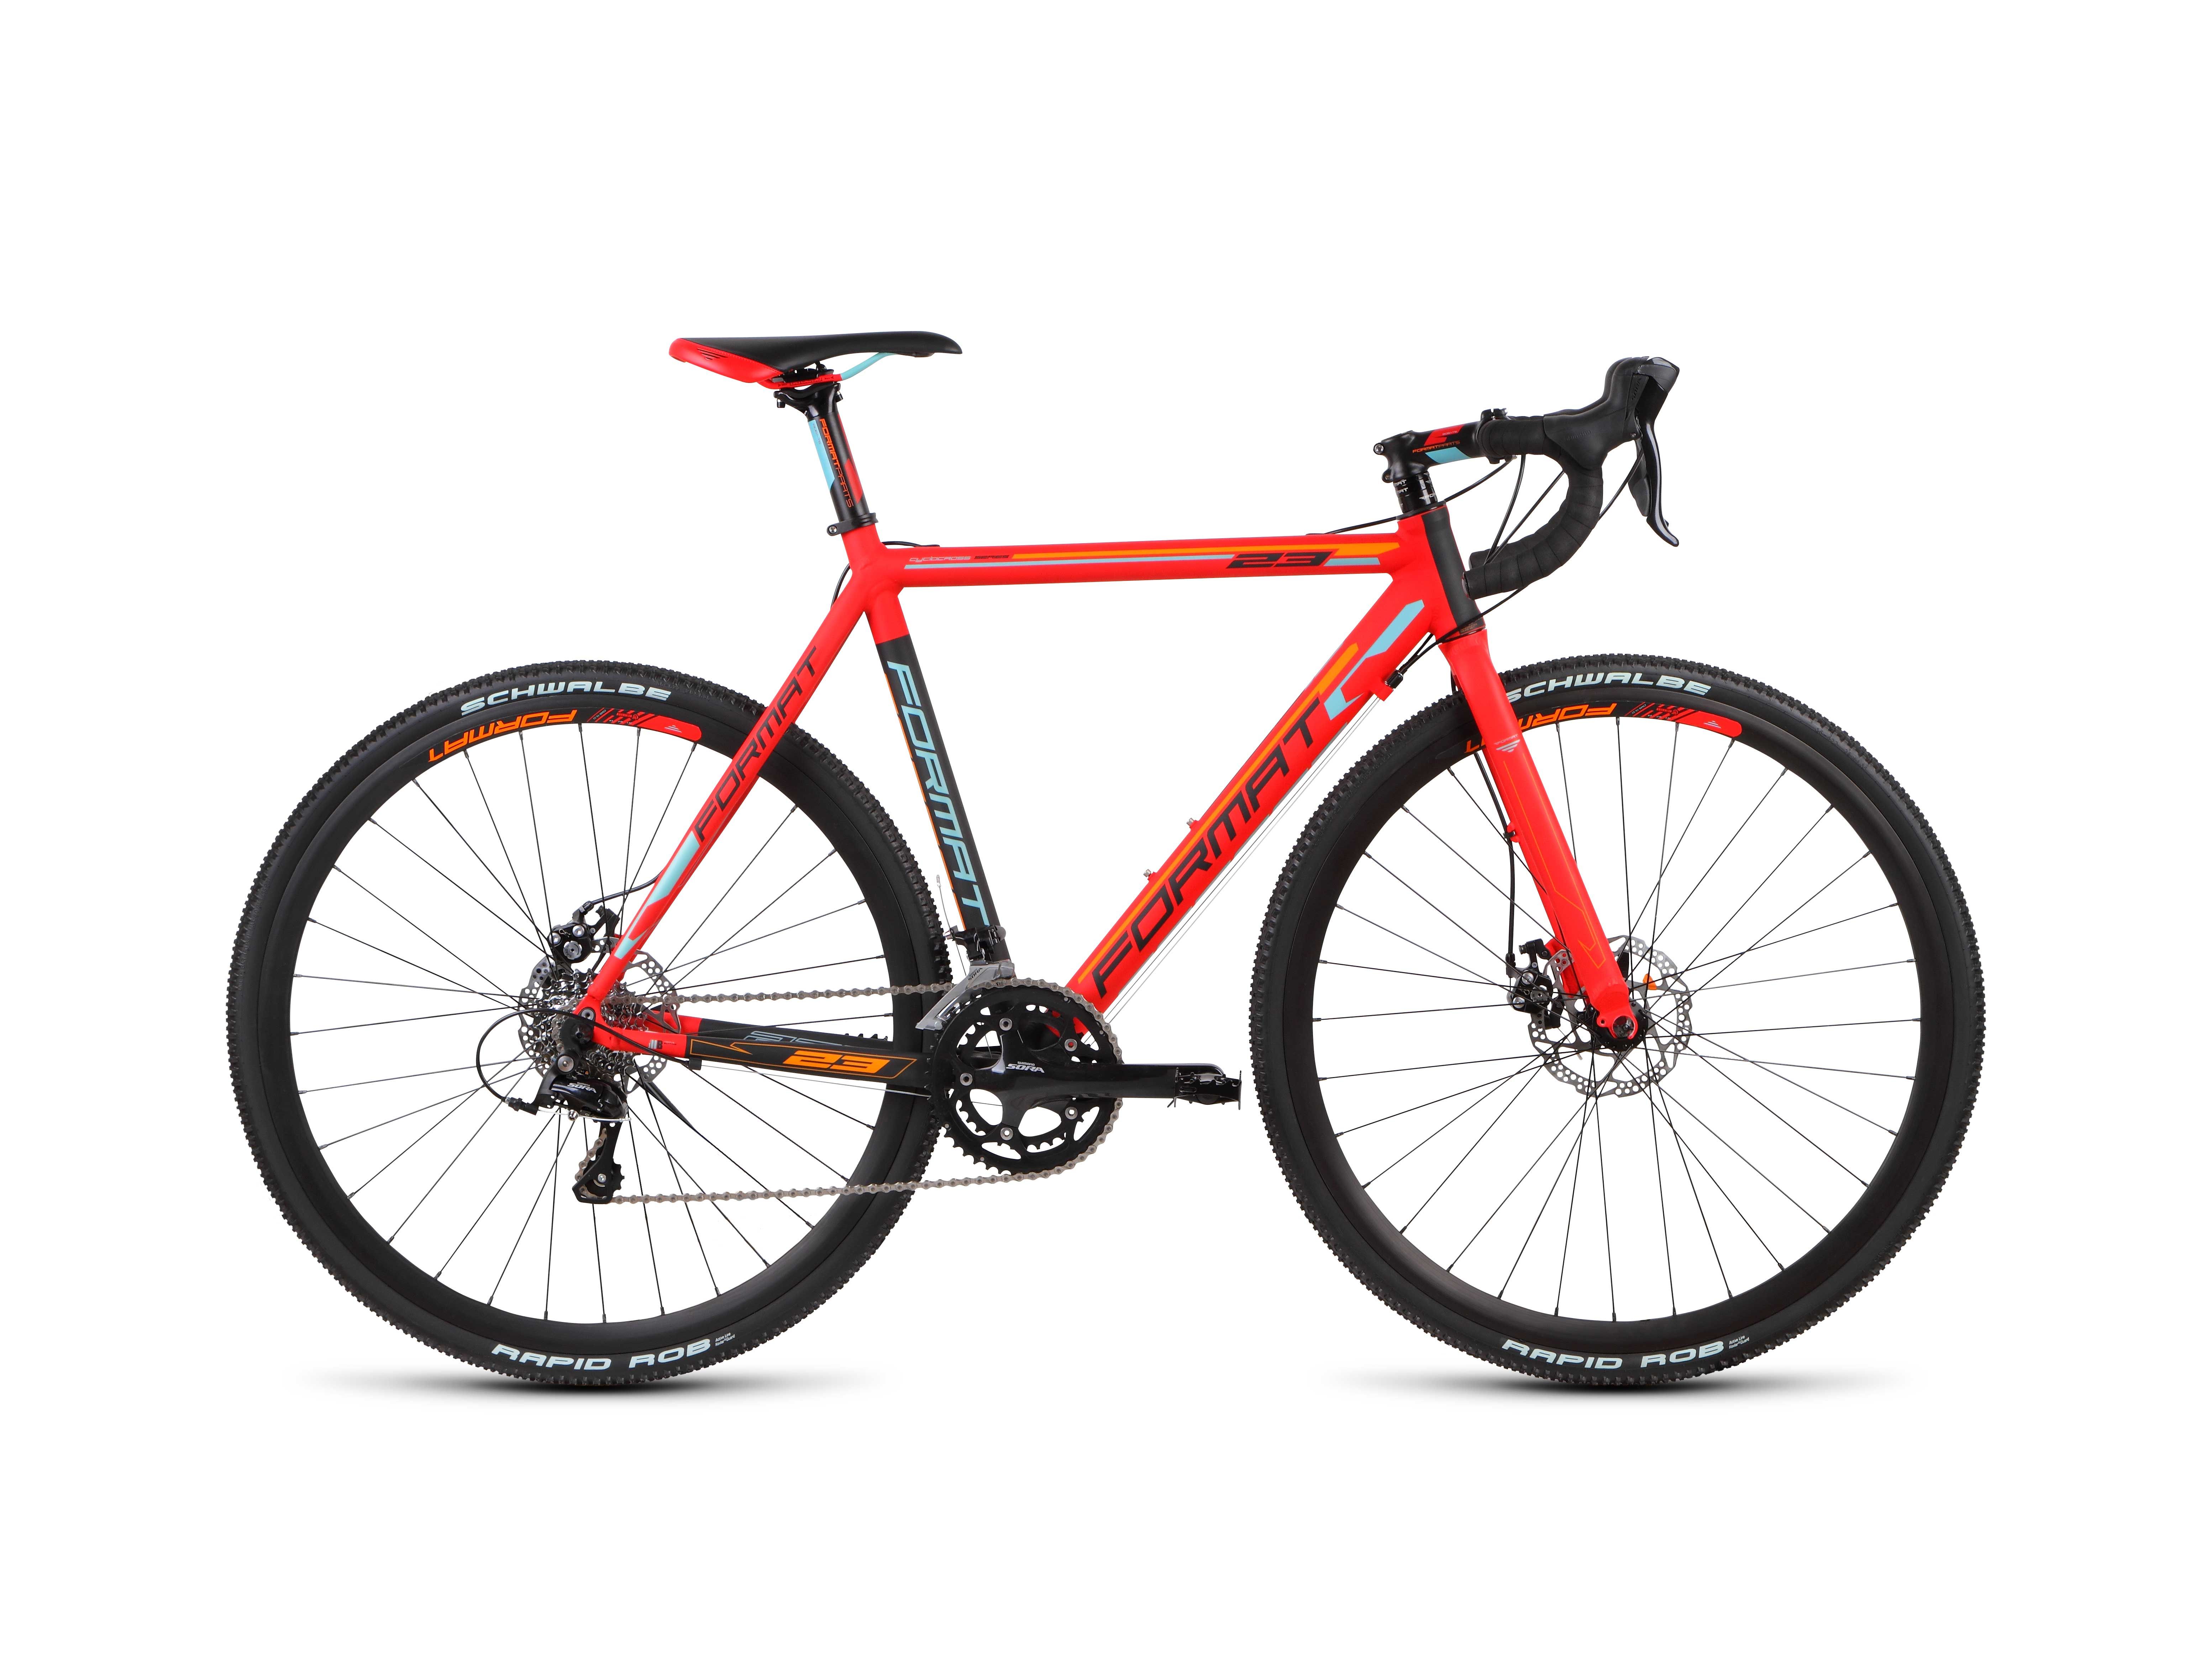  Отзывы о Шоссейном велосипеде Format 2313 2015